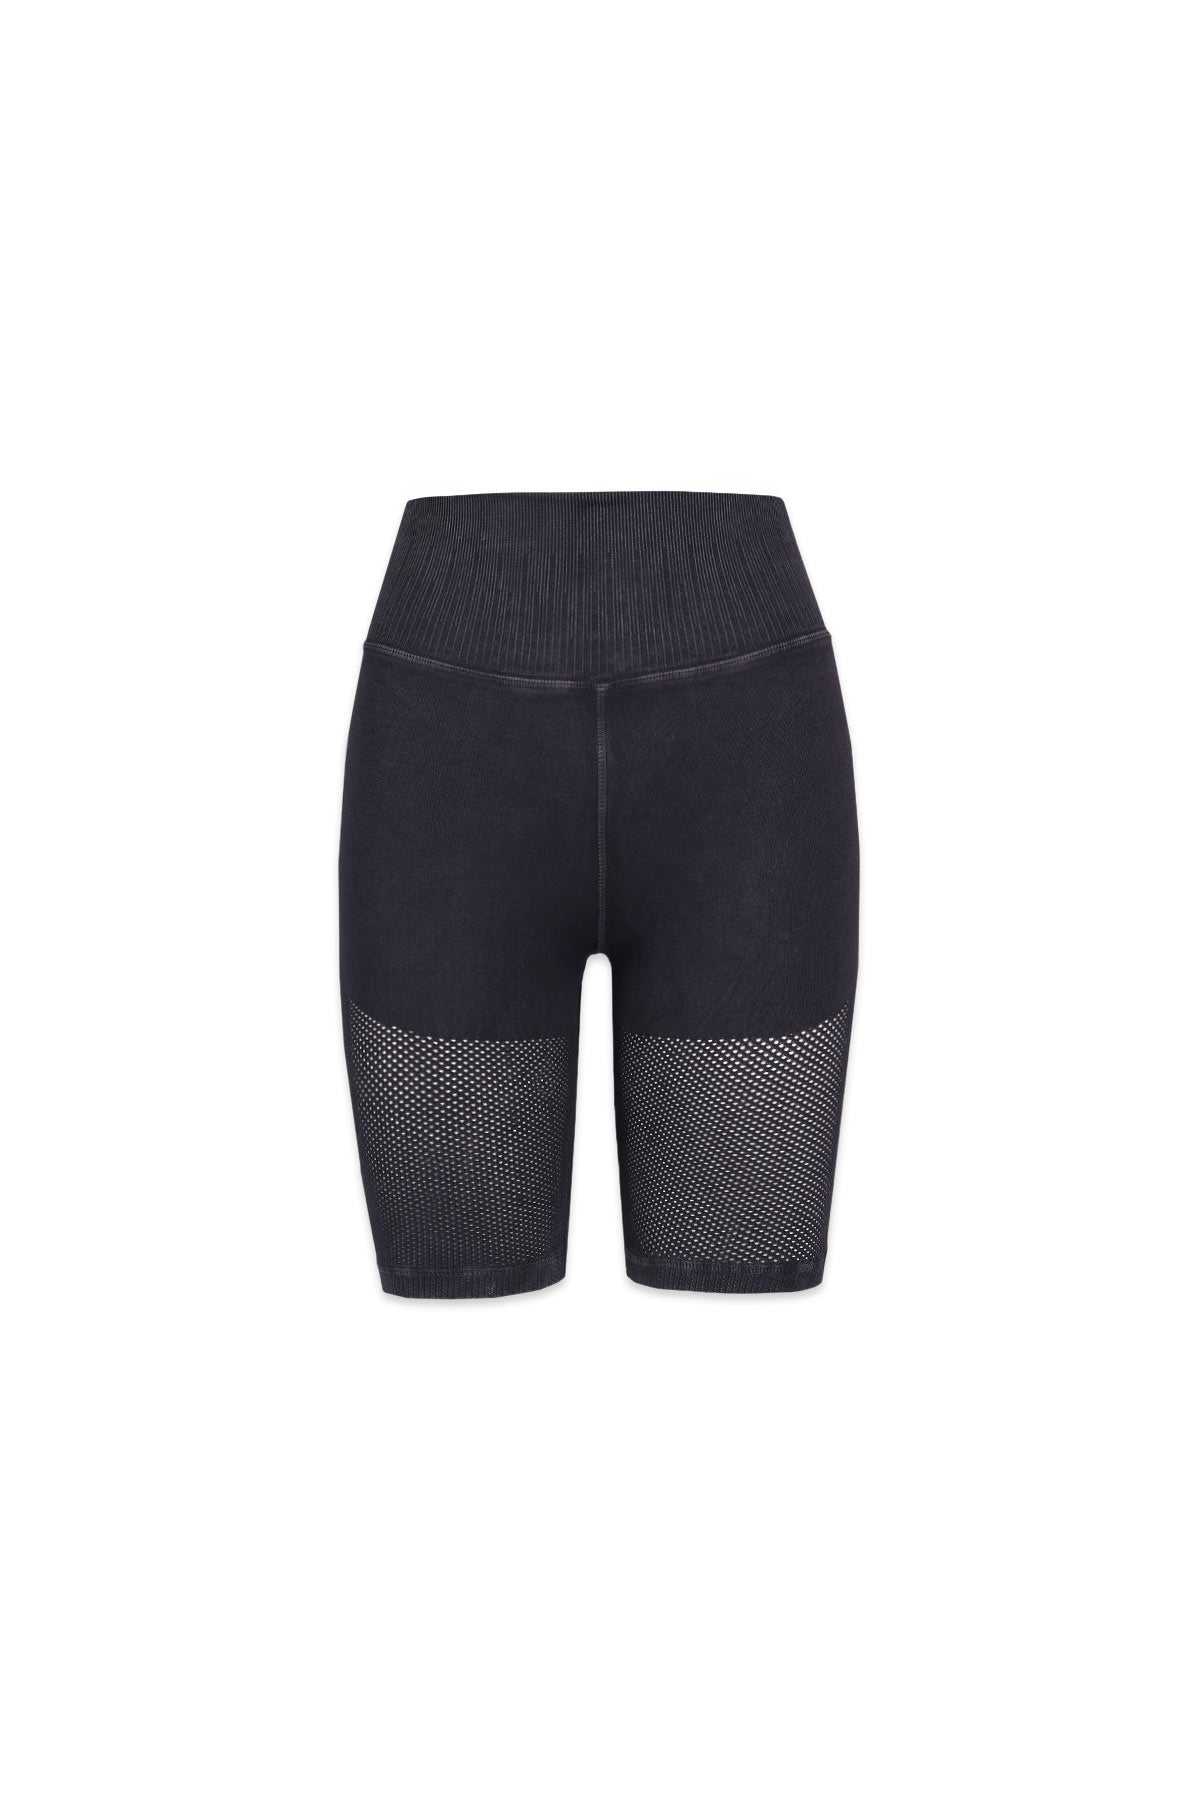 Mesh Biker Shorts in Vintage Black